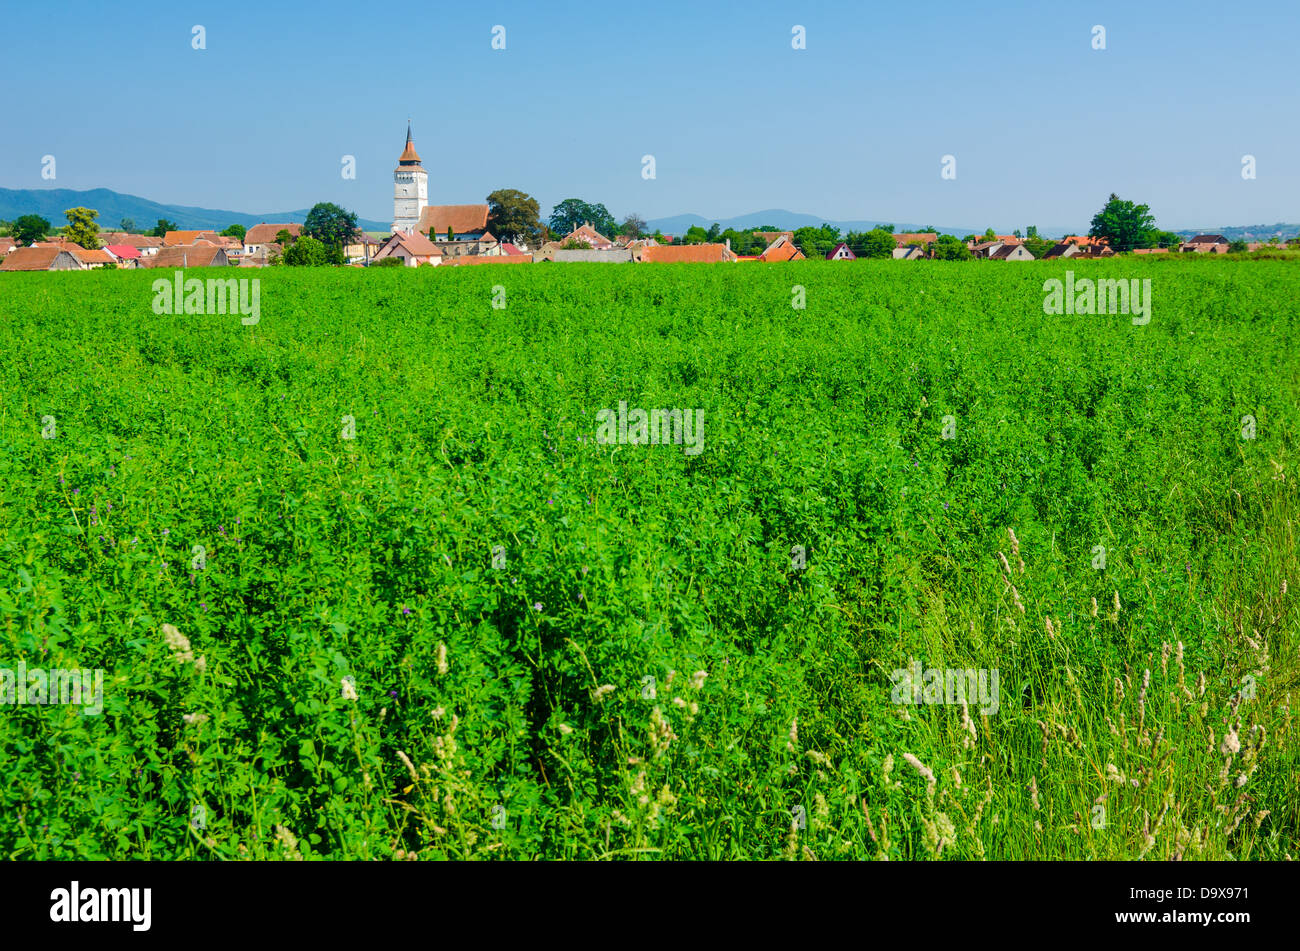 Rotbav, Brasov: Wunderschönes grün Ansicht in einem Siebenbürgischen Dorf, mit der befestigten Kirche im Hintergrund. Stockfoto